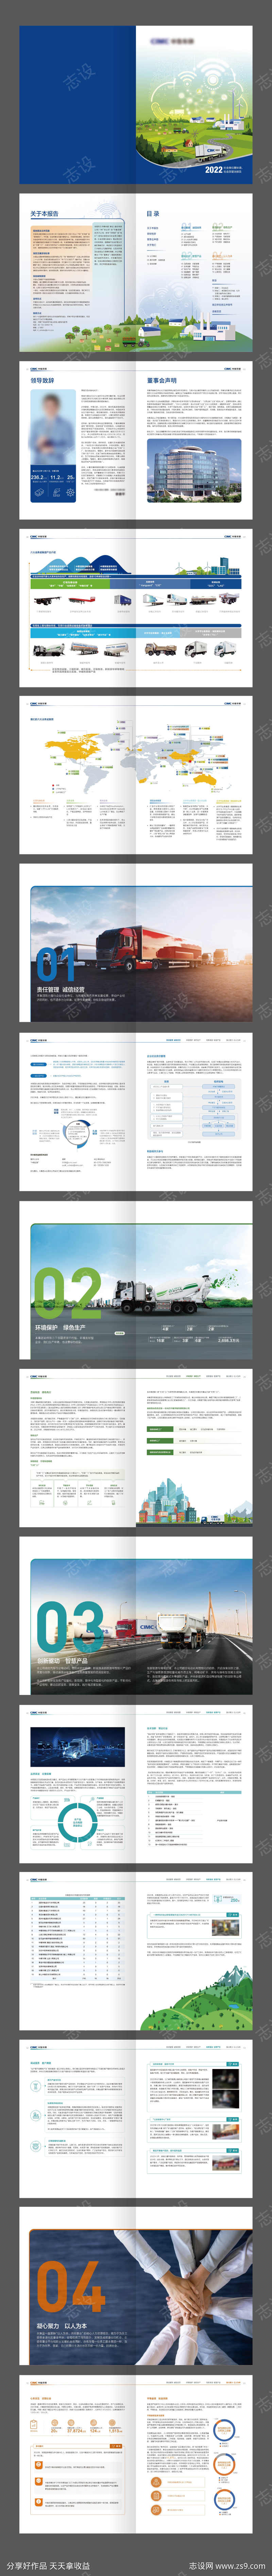 环保车辆机械制造企业年度报告画册